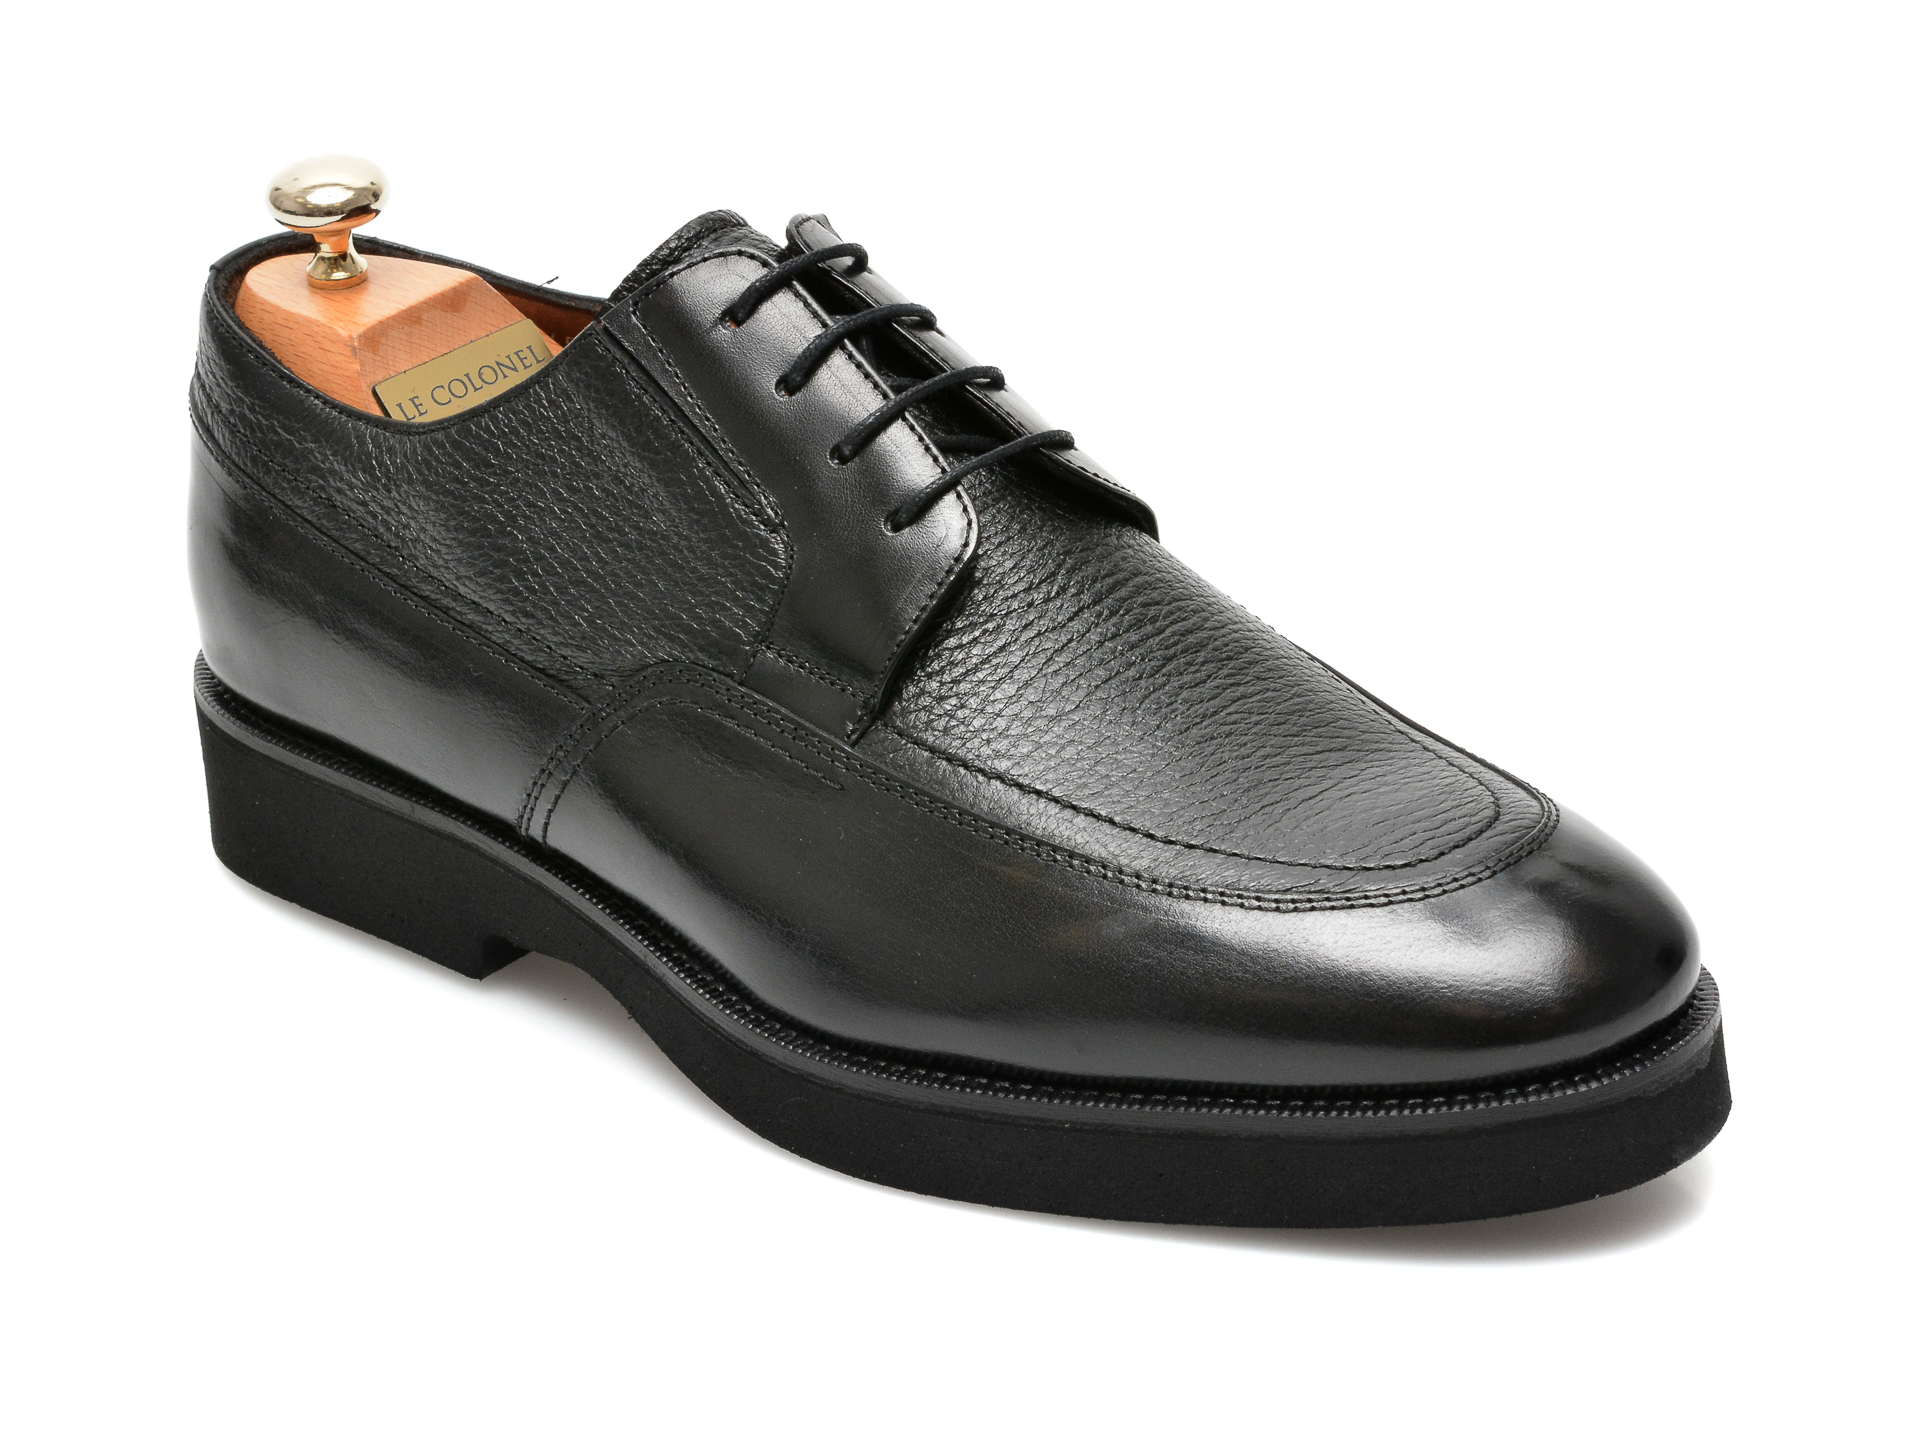 Pantofi LE COLONEL negri, 43452, din piele naturala Le Colonel imagine 2022 reducere